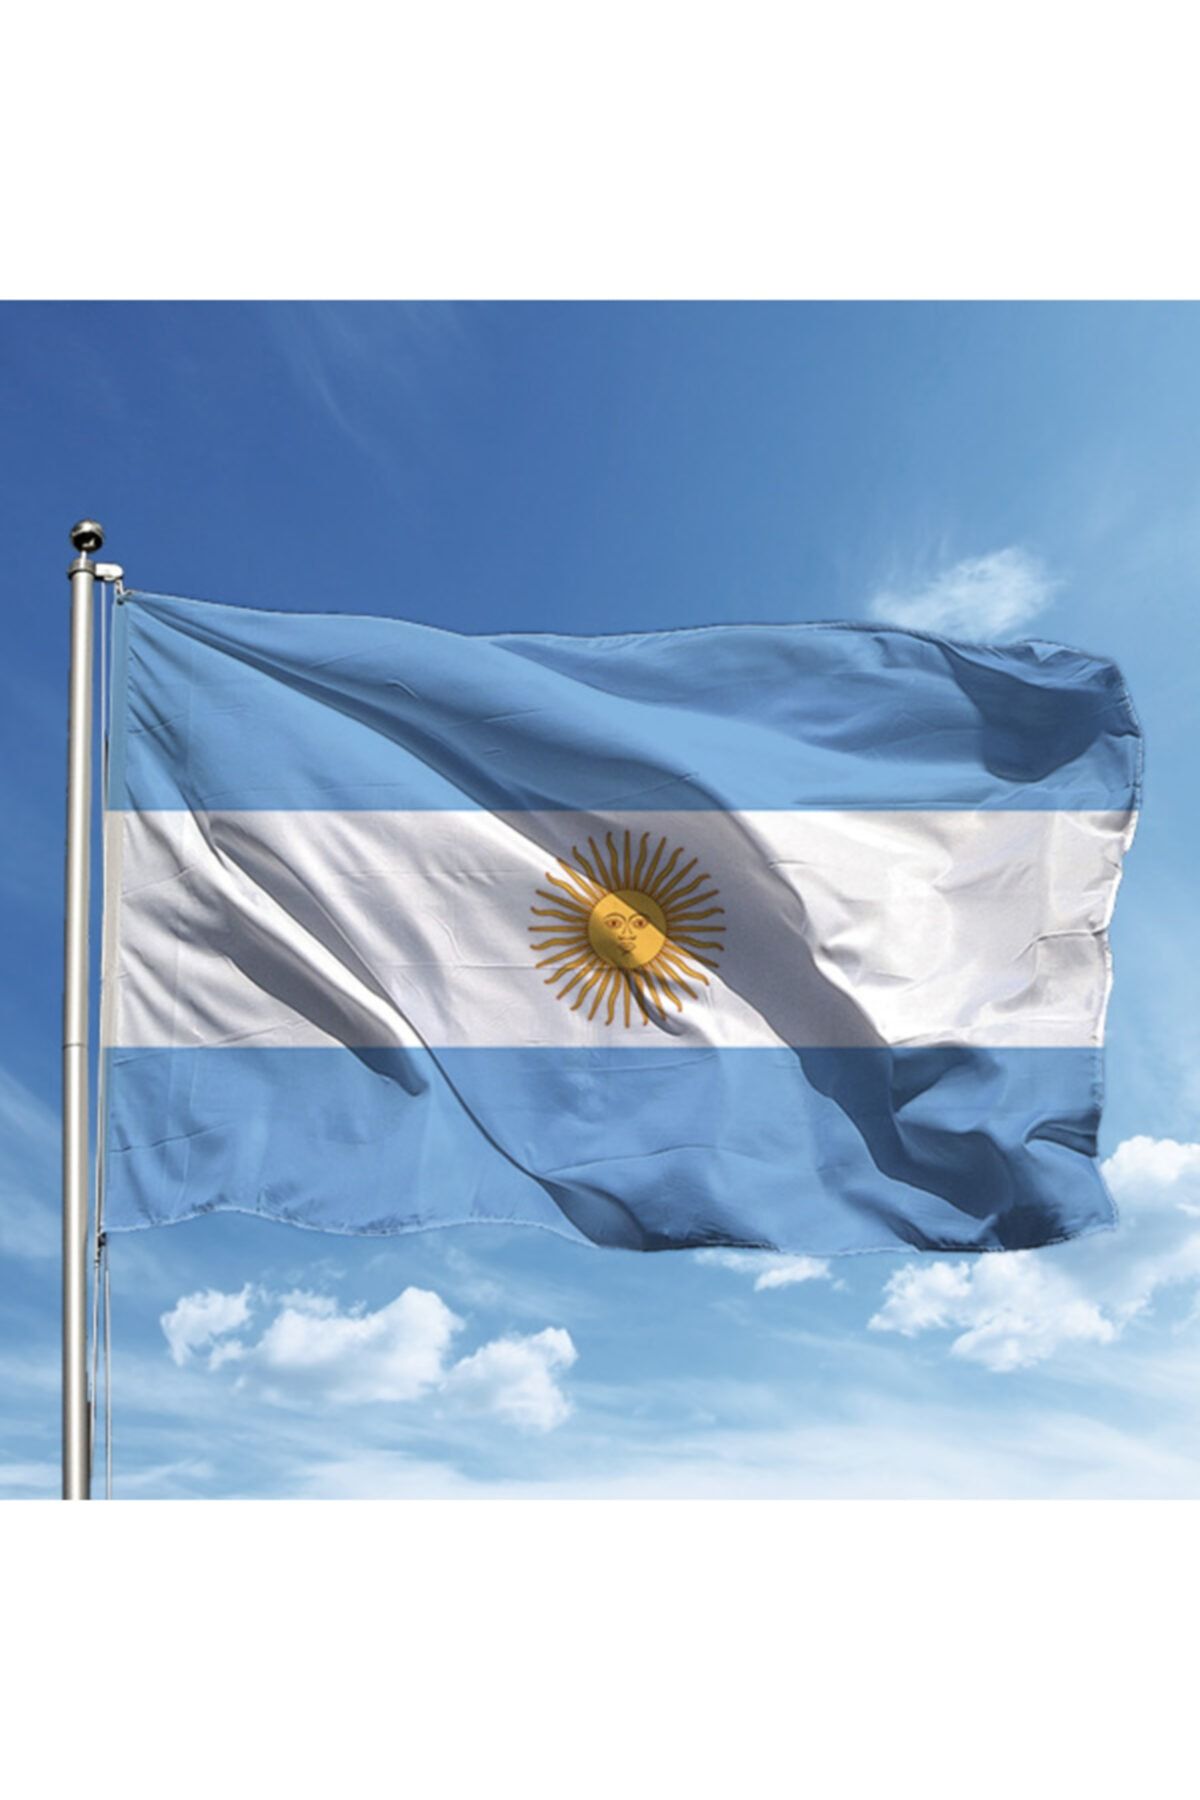 Özgüvenal Arjantin Ülke Bayrağı 70x105